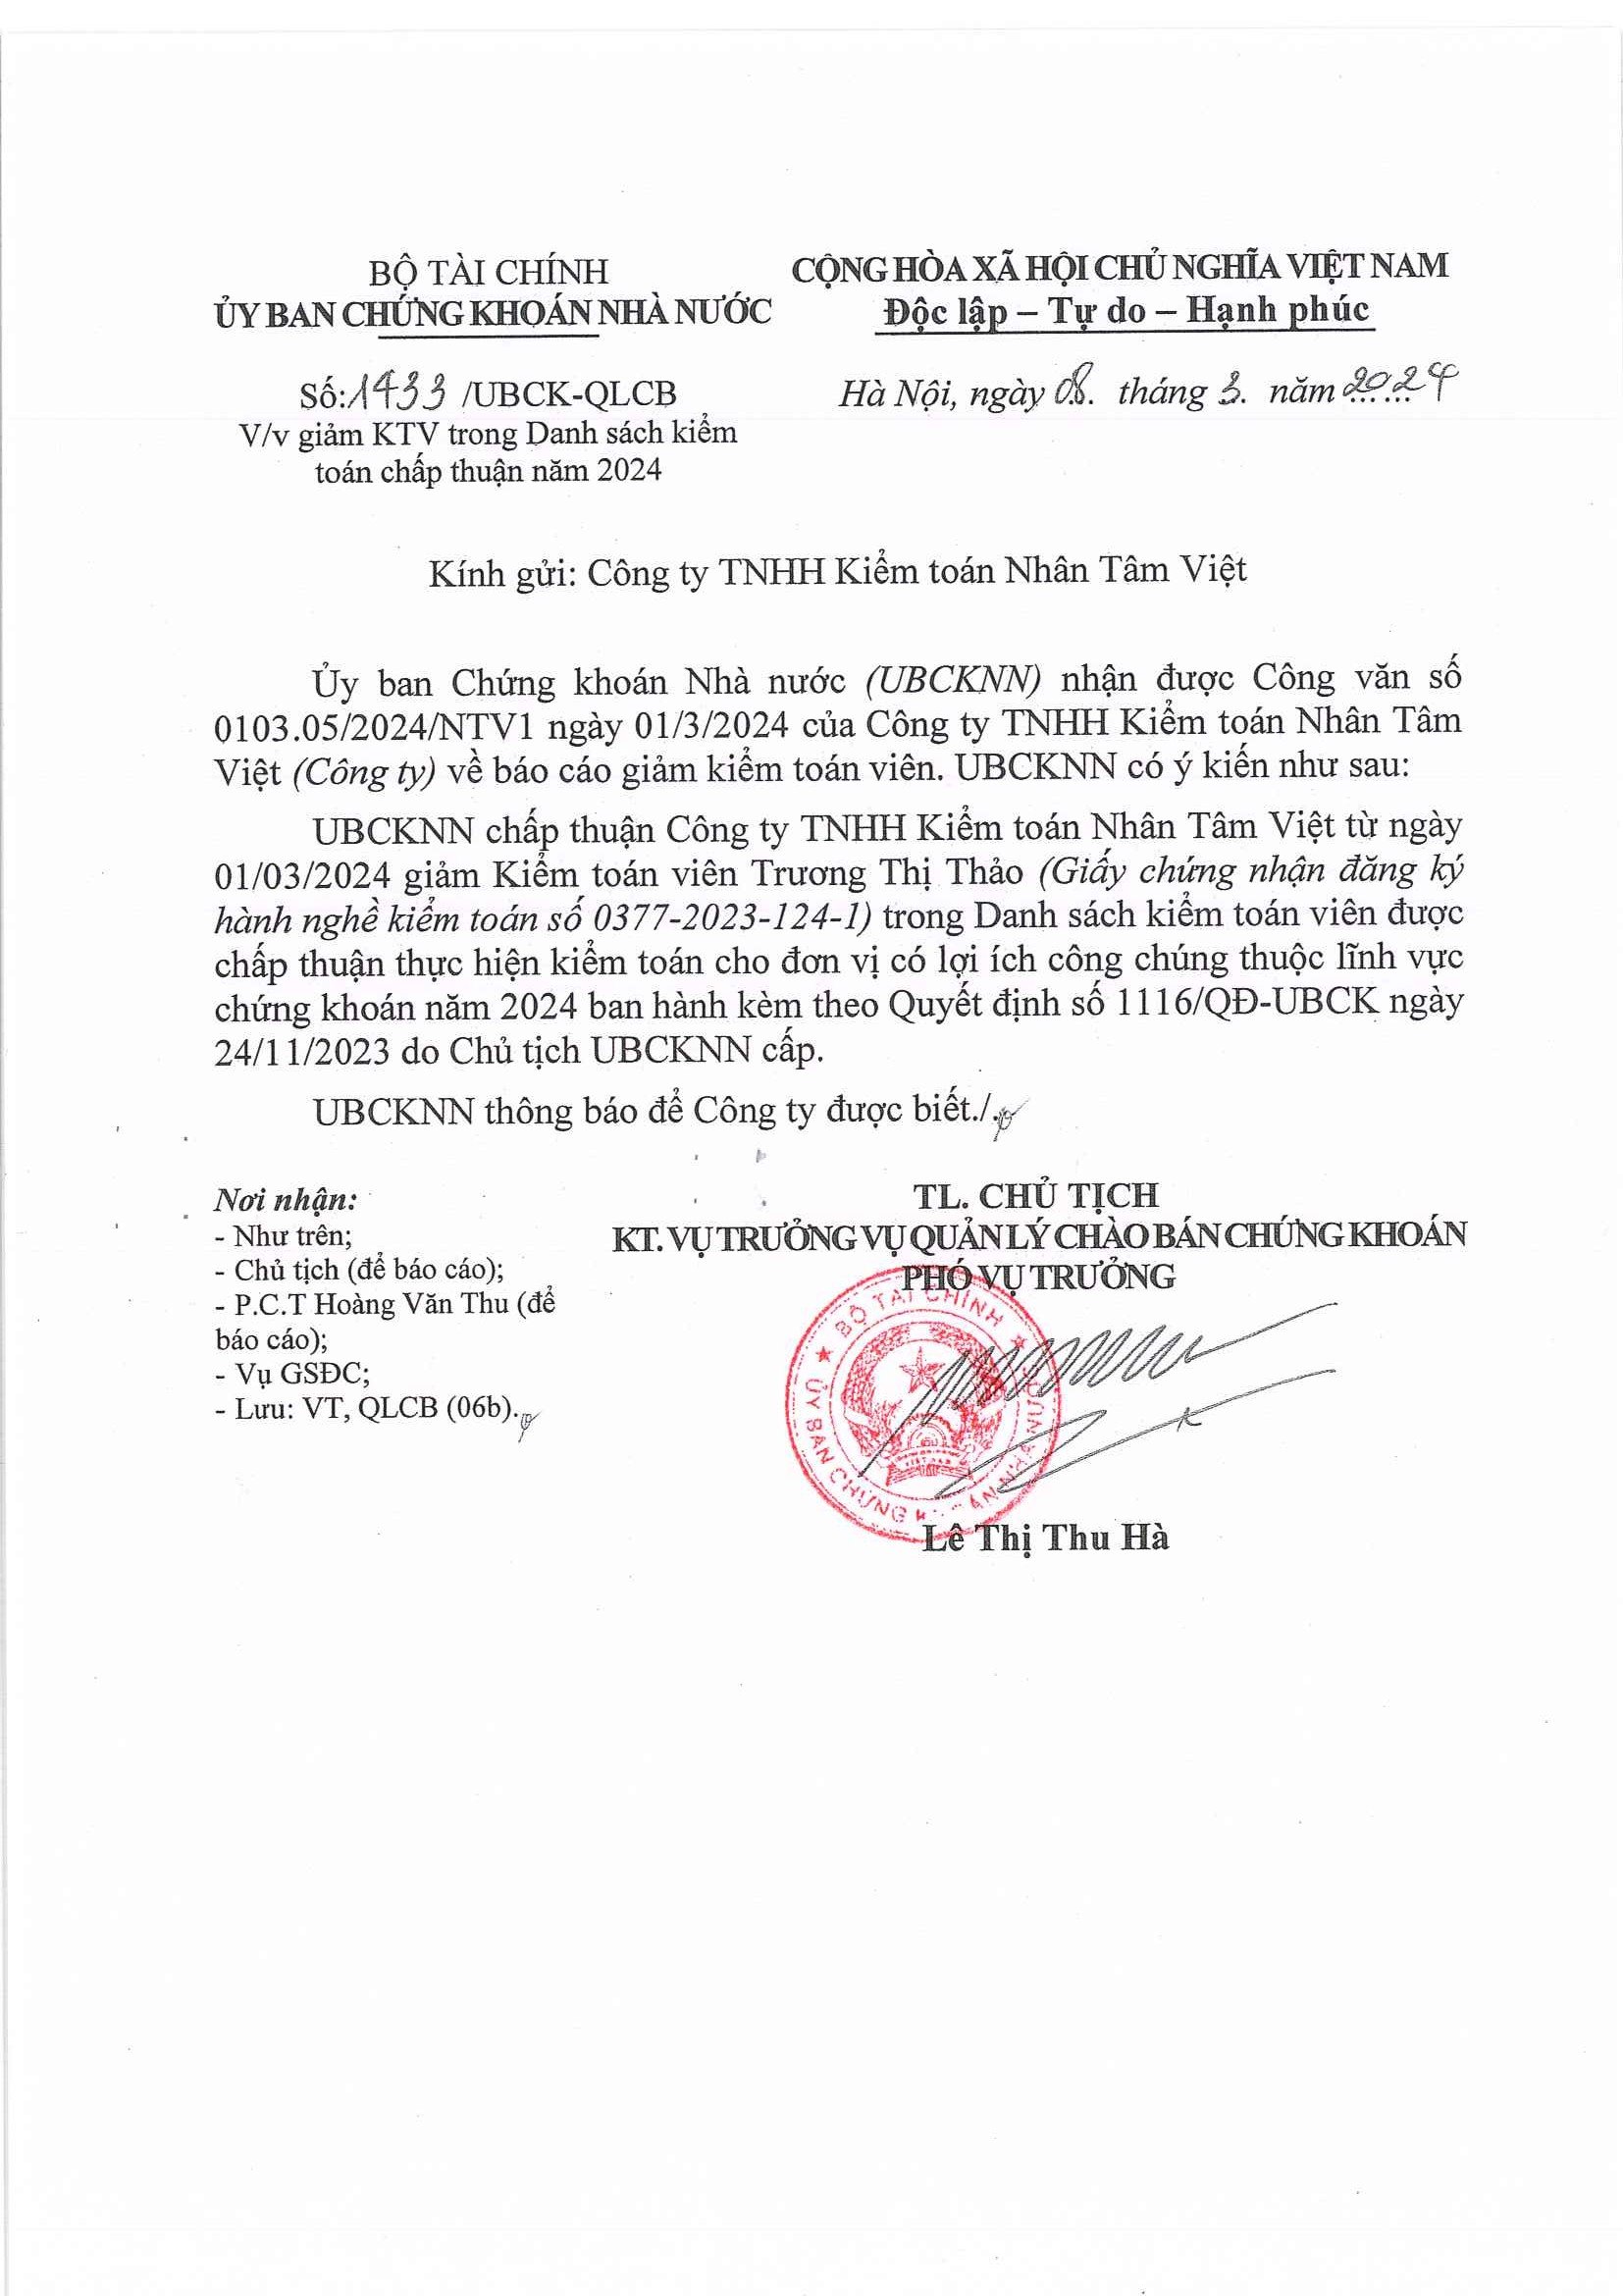 Cập nhật thông tin Báo cáo minh bạch tháng 3/2024 (Thông Báo Giảm kiểm toán viên Trương Thị Thảo trong danh sách Kiểm toán viên được kiểm toán cho các đơn vị có LICC năm 2024)